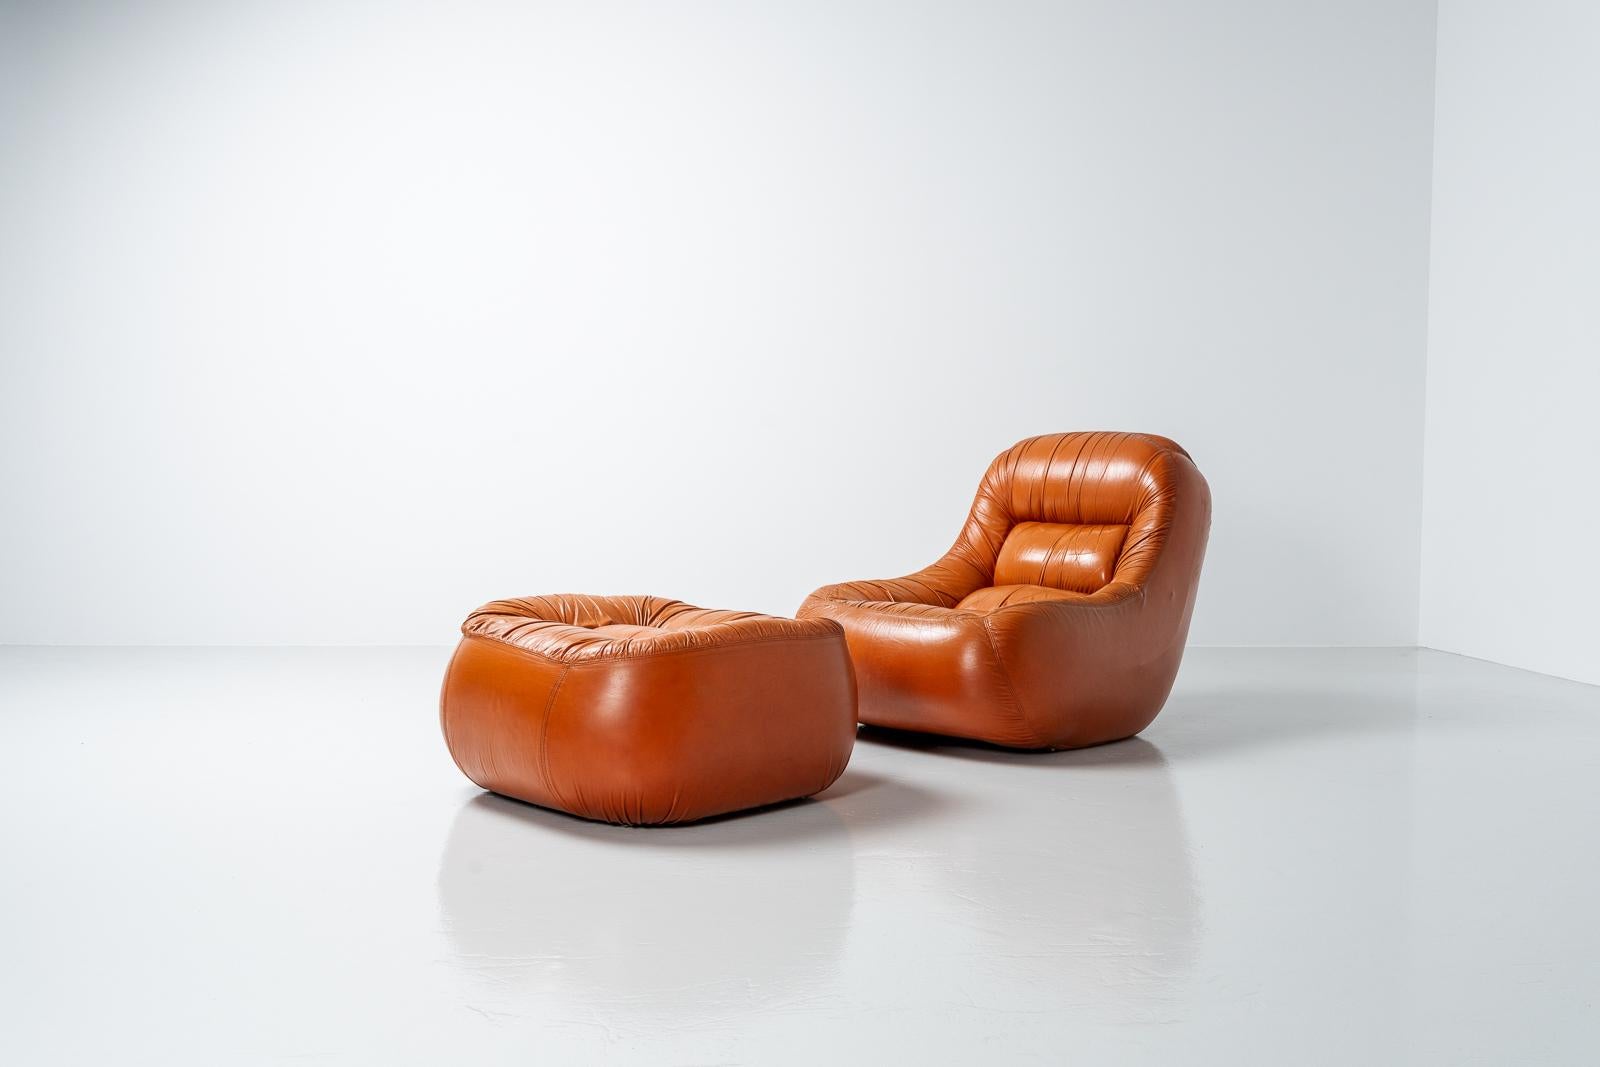 Sehr cool geformter Loungesessel, entworfen von Jonathan de Pas, Donato D'urbino und Paolo Lomazzo, hergestellt von BBB Bonacina, Italien 1969. Dieser Stuhl hat eine schöne cognacfarbene Lederpolsterung und die Struktur ist vollständig mit